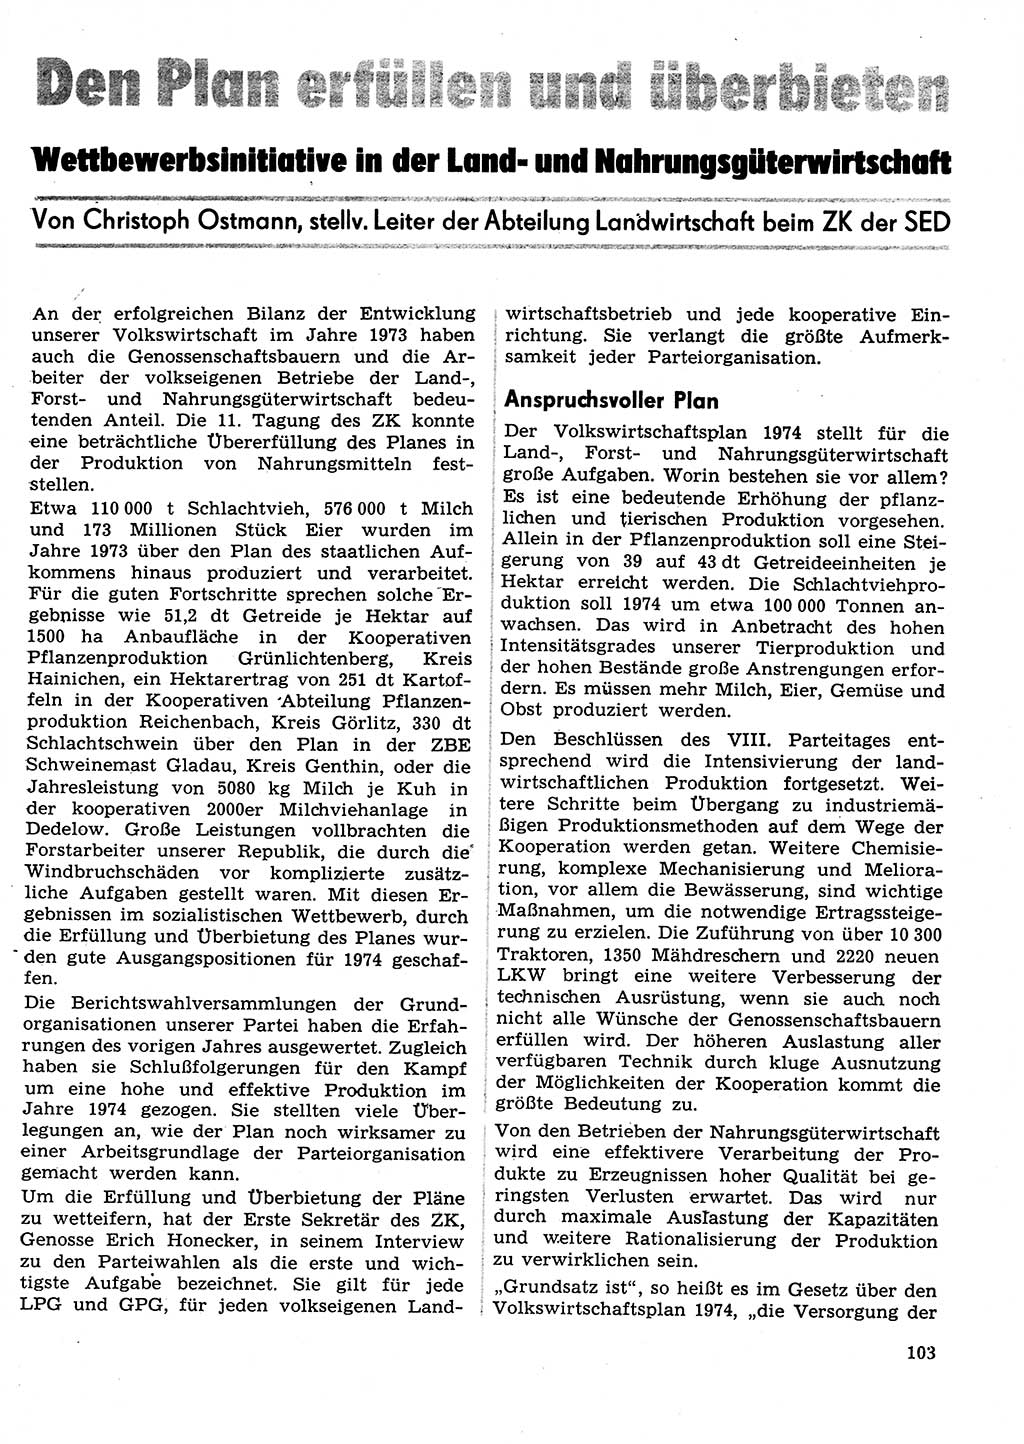 Neuer Weg (NW), Organ des Zentralkomitees (ZK) der SED (Sozialistische Einheitspartei Deutschlands) für Fragen des Parteilebens, 29. Jahrgang [Deutsche Demokratische Republik (DDR)] 1974, Seite 103 (NW ZK SED DDR 1974, S. 103)